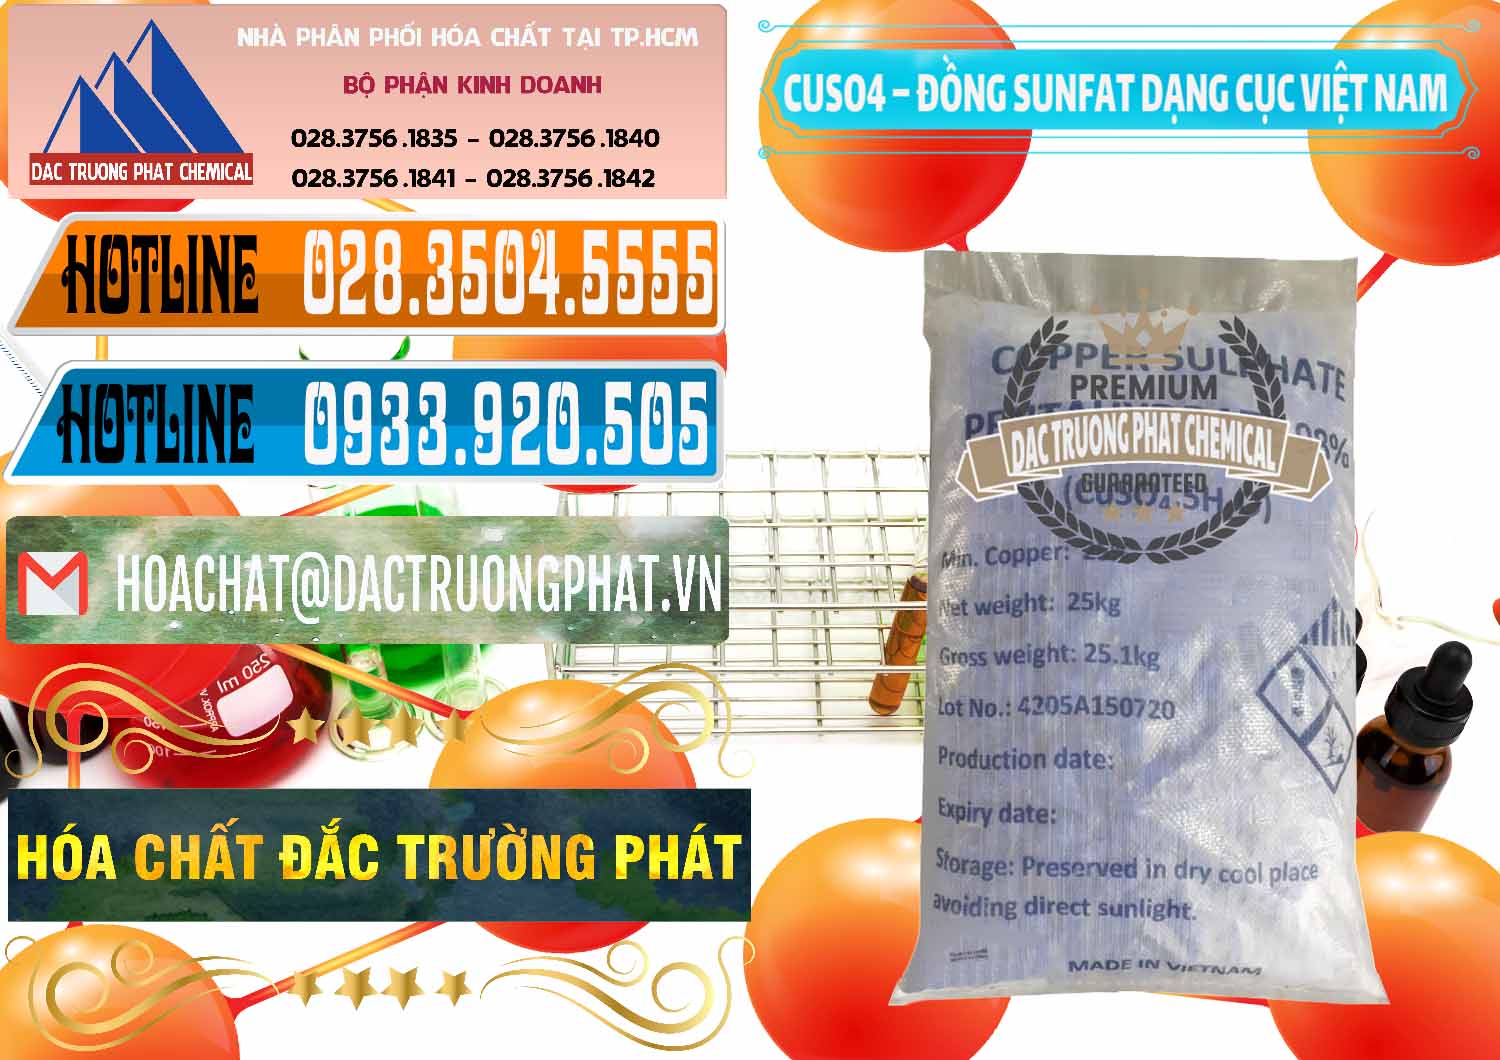 Công ty cung cấp - bán CUSO4 – Đồng Sunfat Dạng Cục Việt Nam - 0303 - Cty cung ứng & bán hóa chất tại TP.HCM - stmp.net